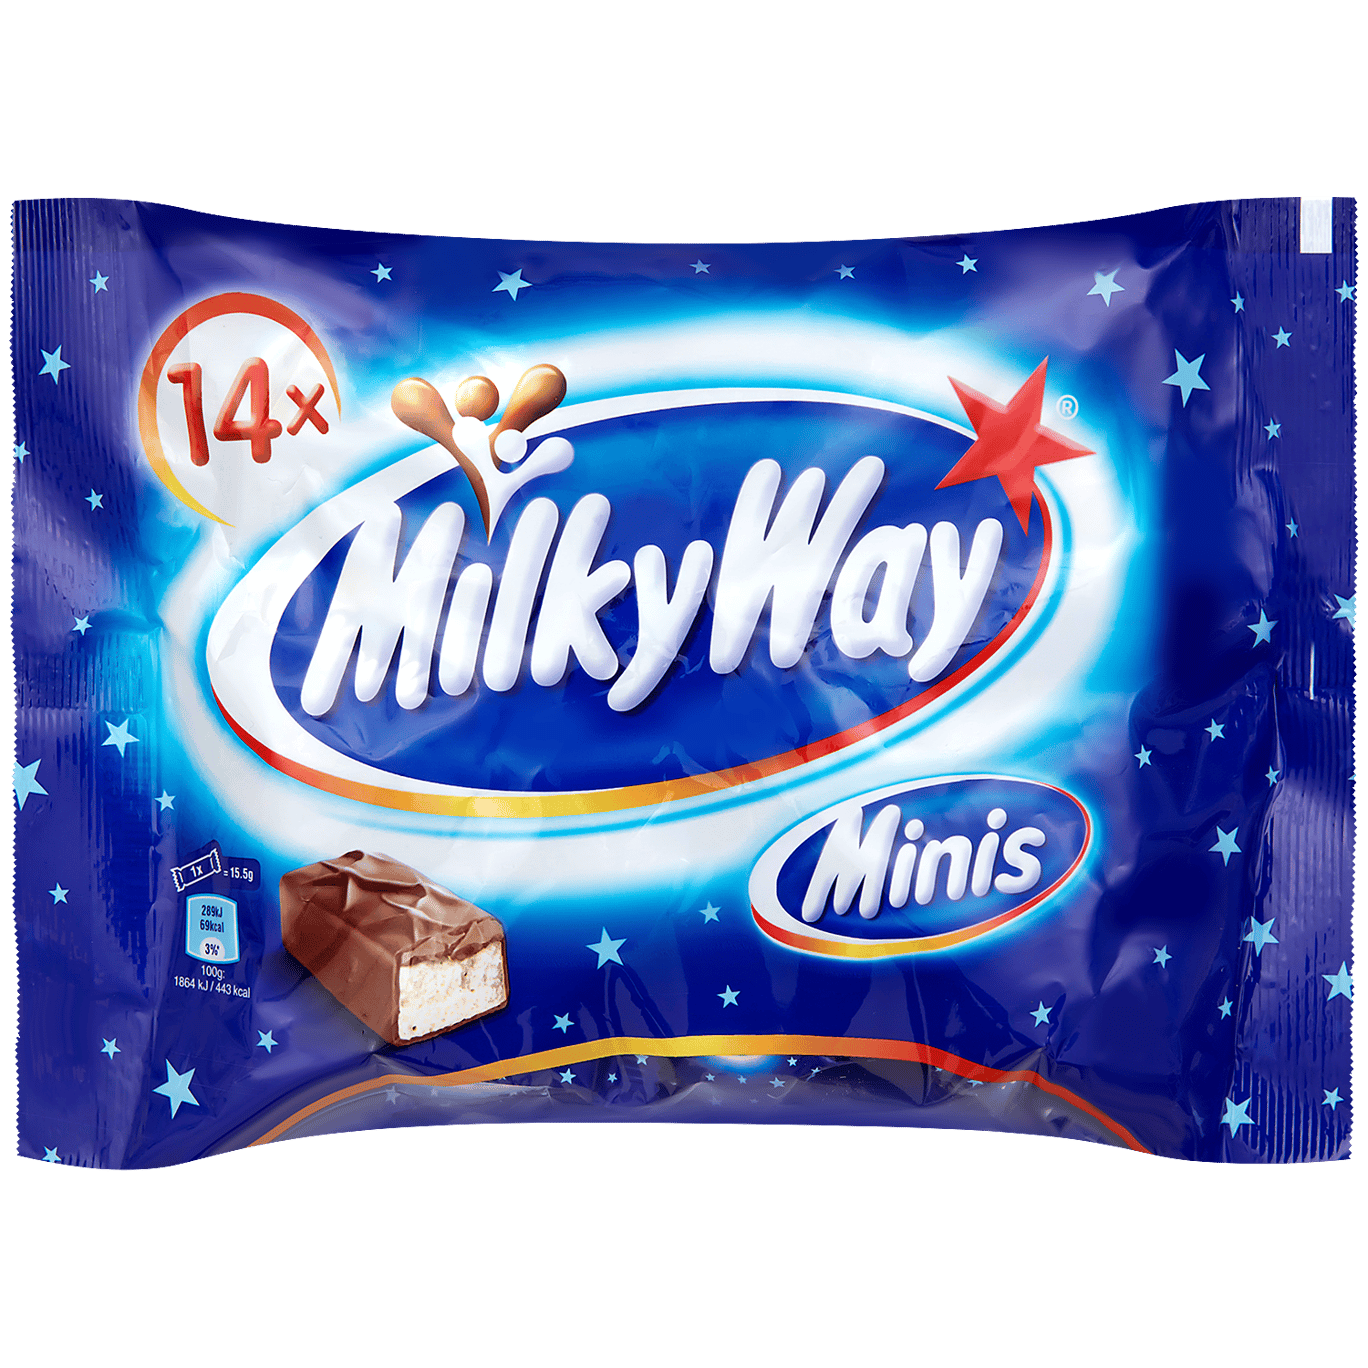 MilkyWay Mini's